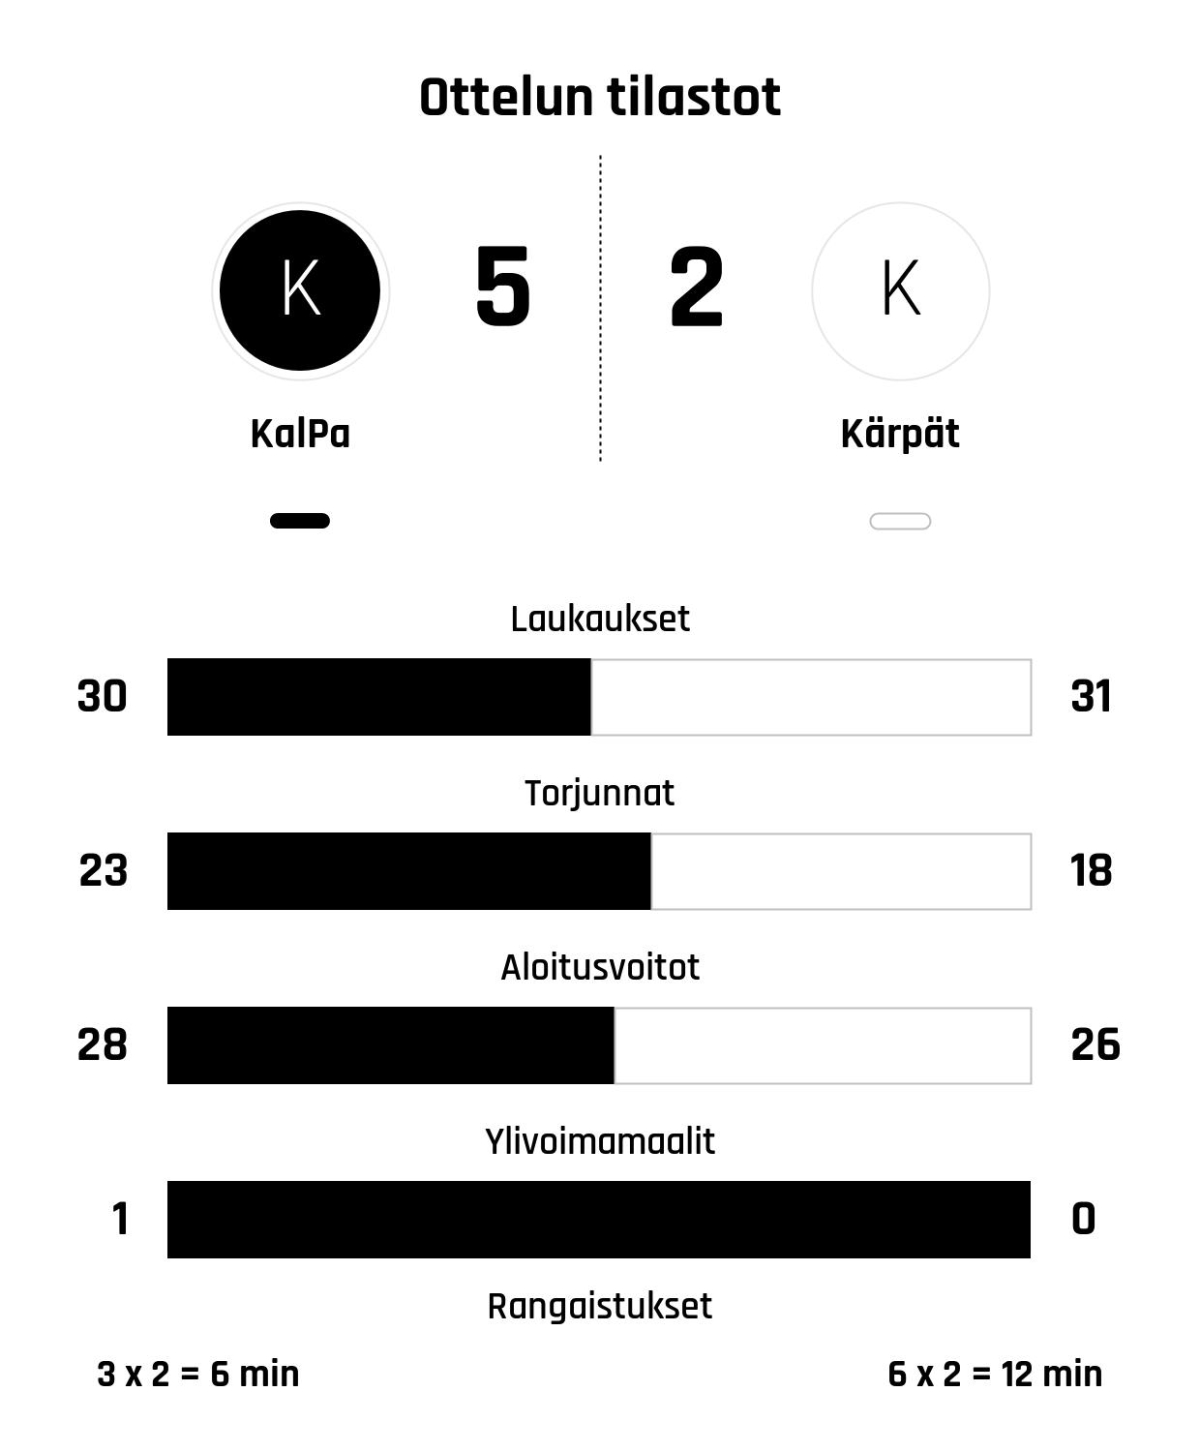 KalPa voitti Kärpät 5-2